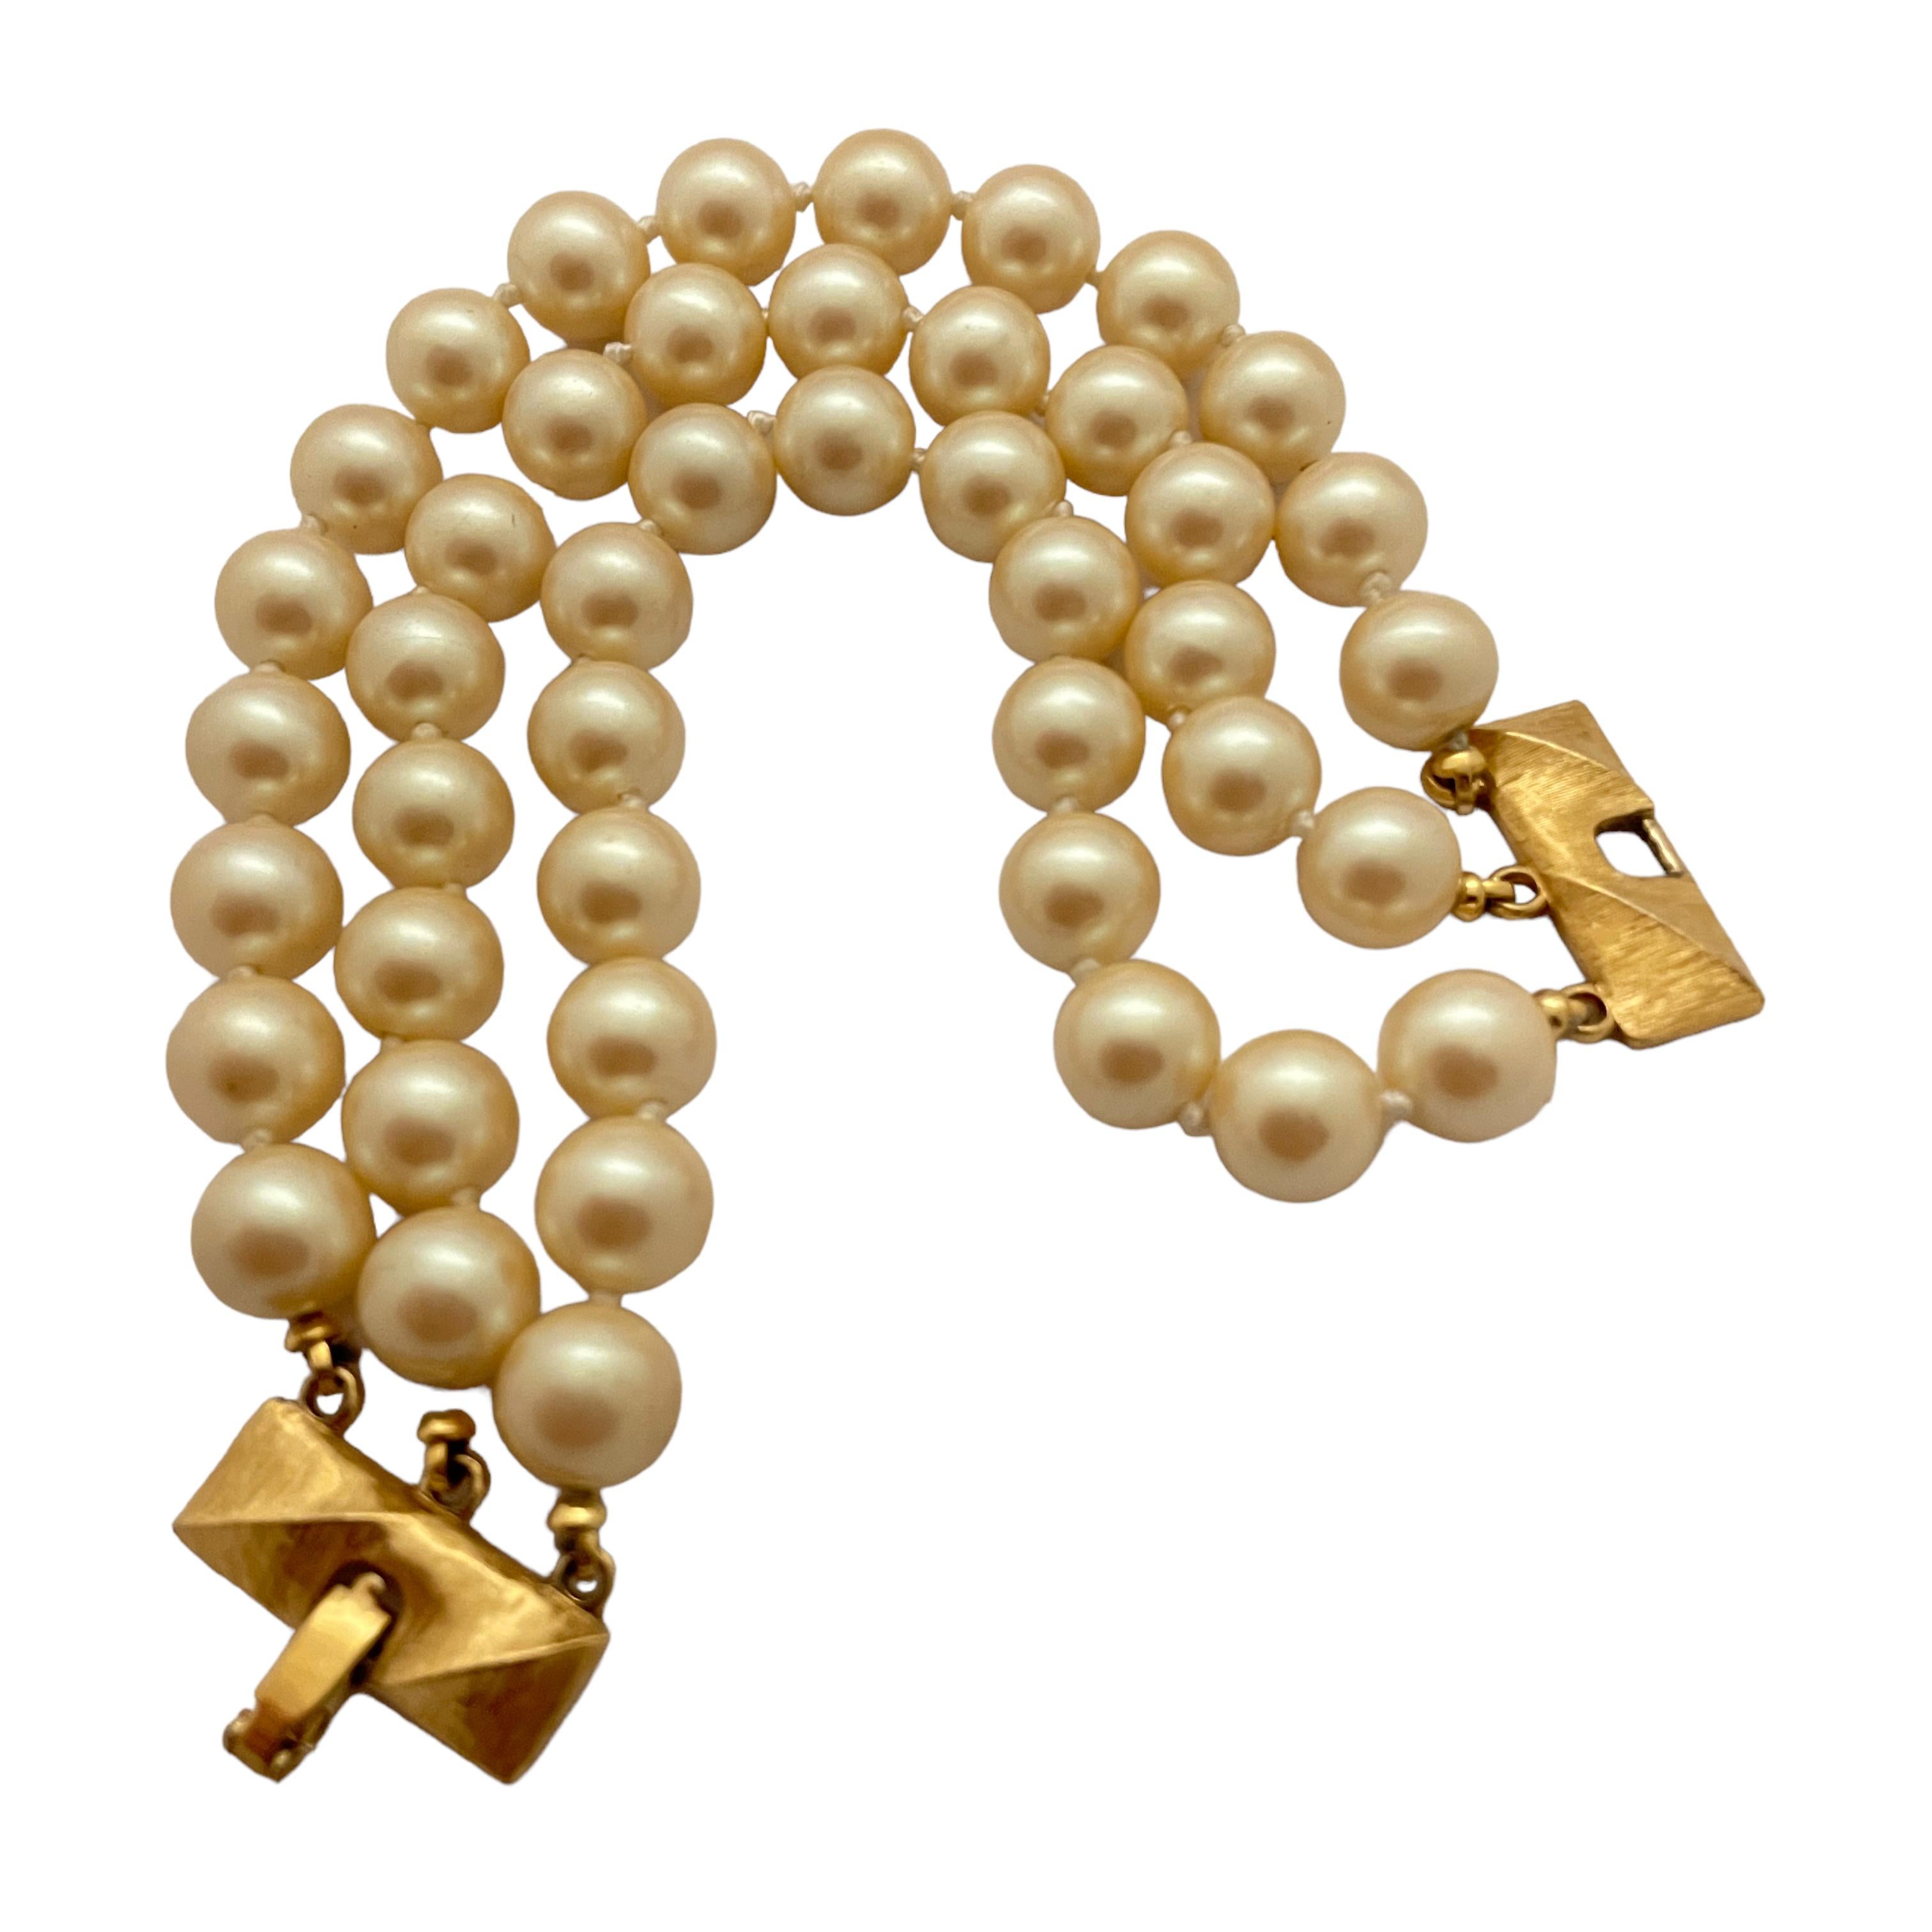 DETAILS

• signed MONET

• gold tone with pearls

• vintage designer runway bracelet  

MEASUREMENTS  

• 7.75